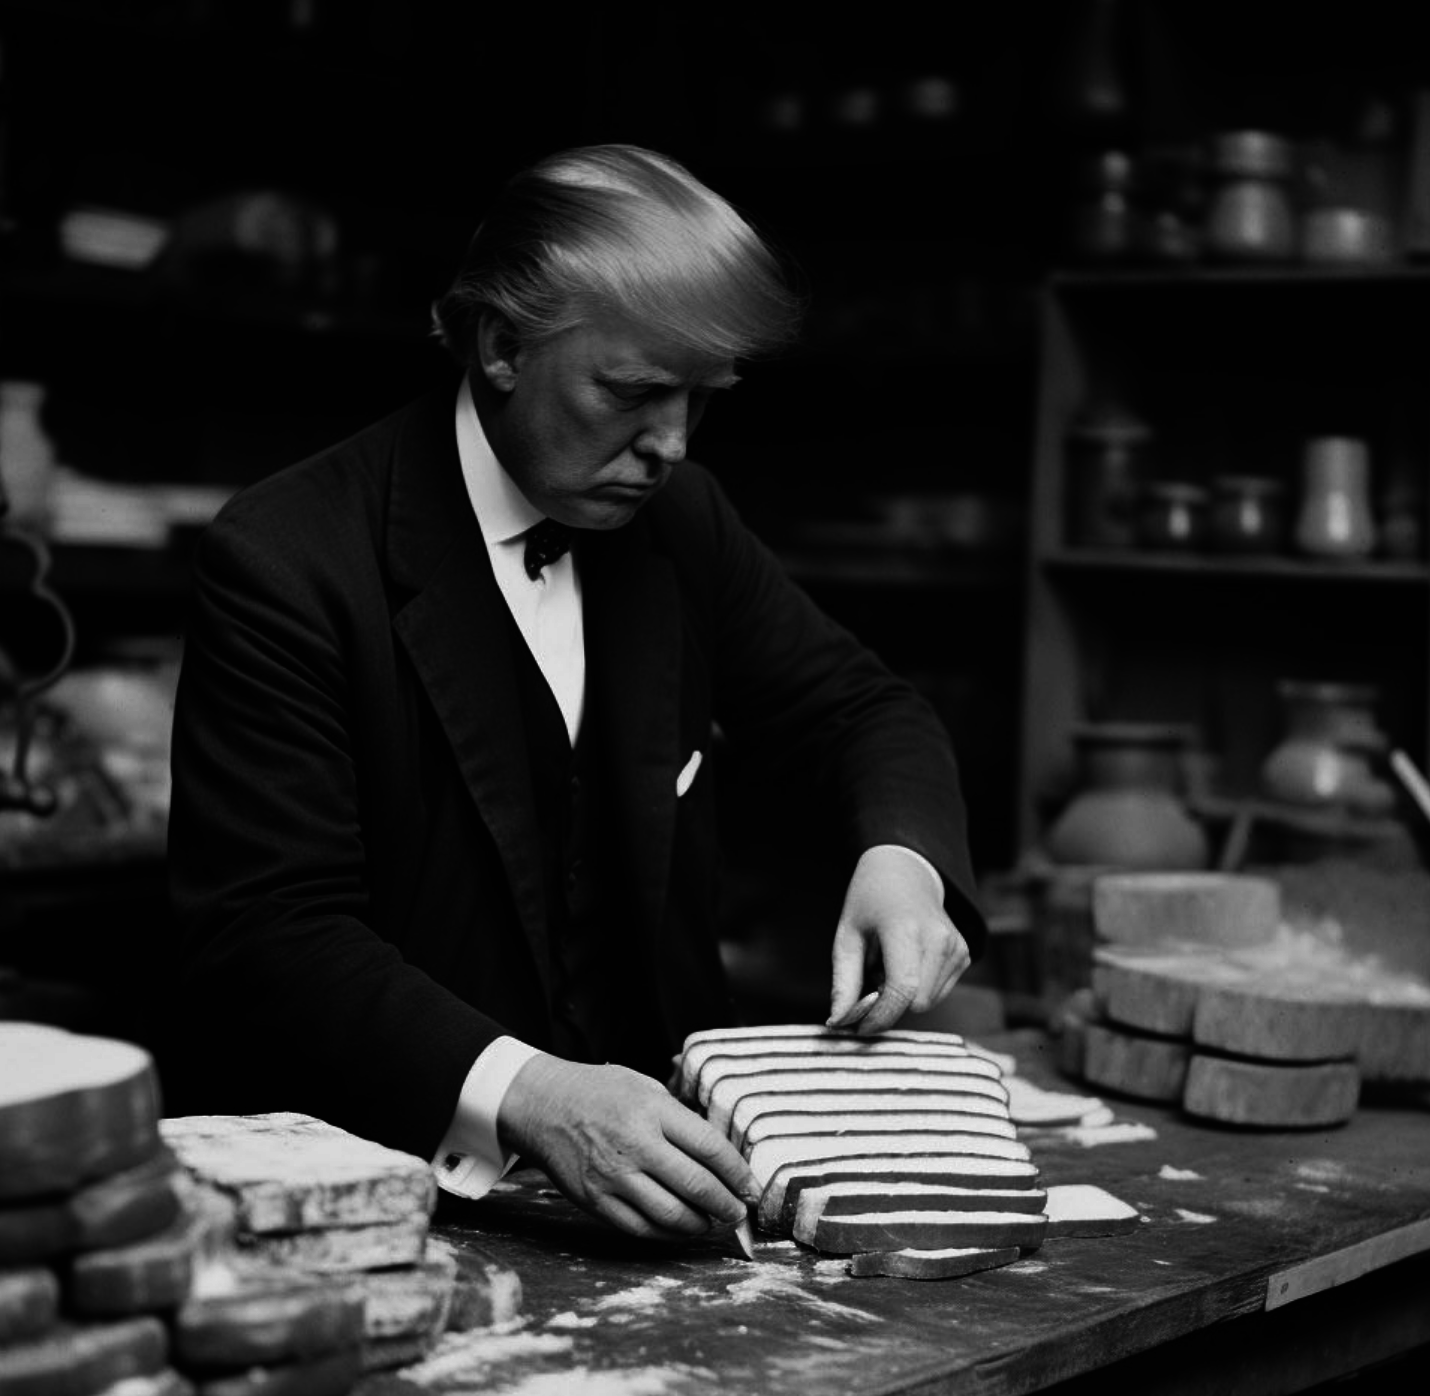 Trump slicing bread